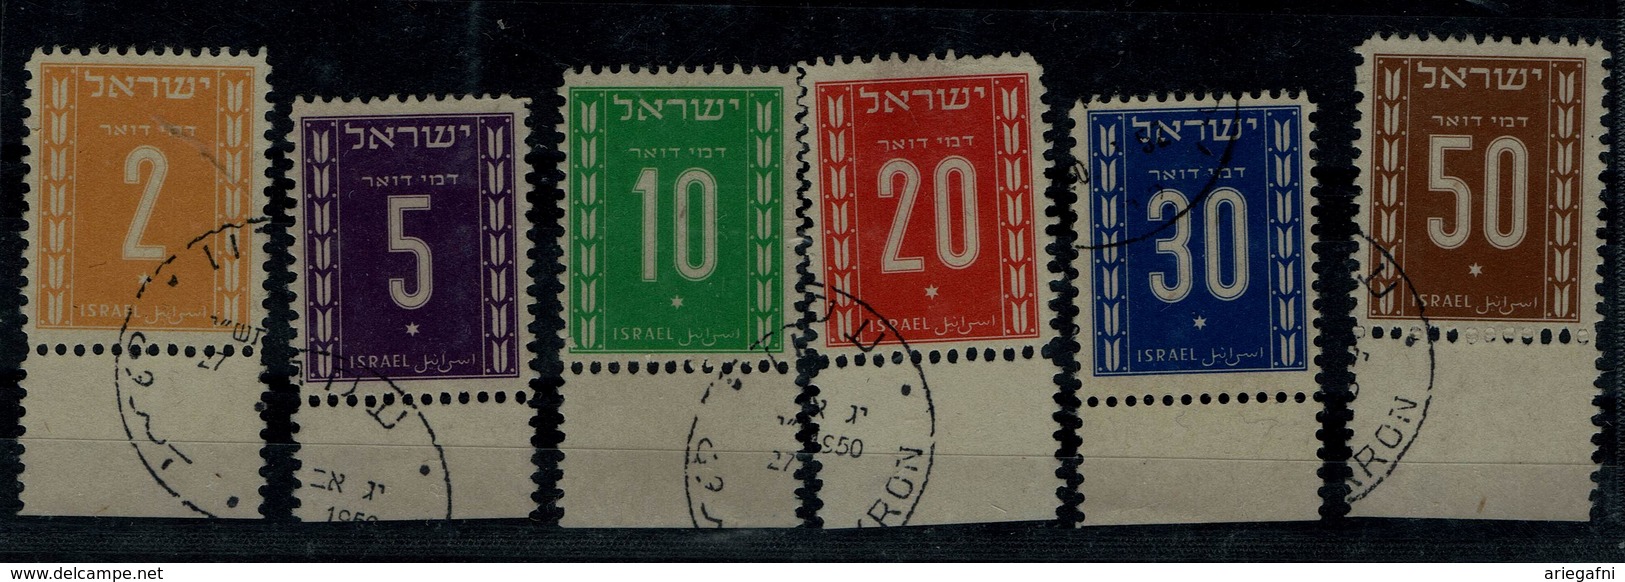 ISRAEL 1949 2nd POSTAGE DUE WITH TABS USED VF!! - Gebruikt (met Tabs)